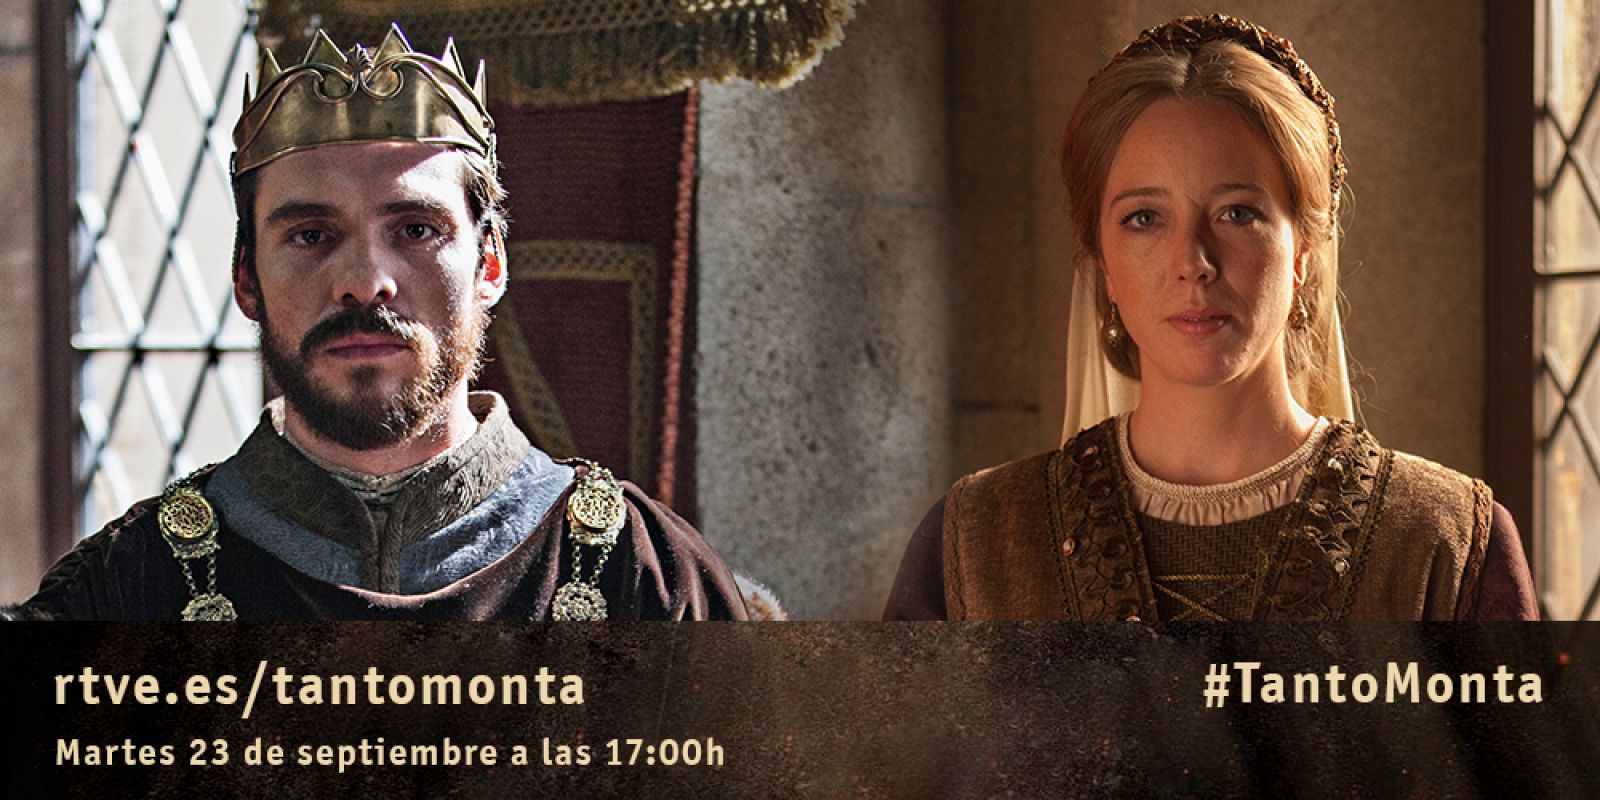 Ainhoa Santamaría (Beatriz de Bobadilla) y Álvaro Monje (Rey de Portual) visitan #TantoMonta